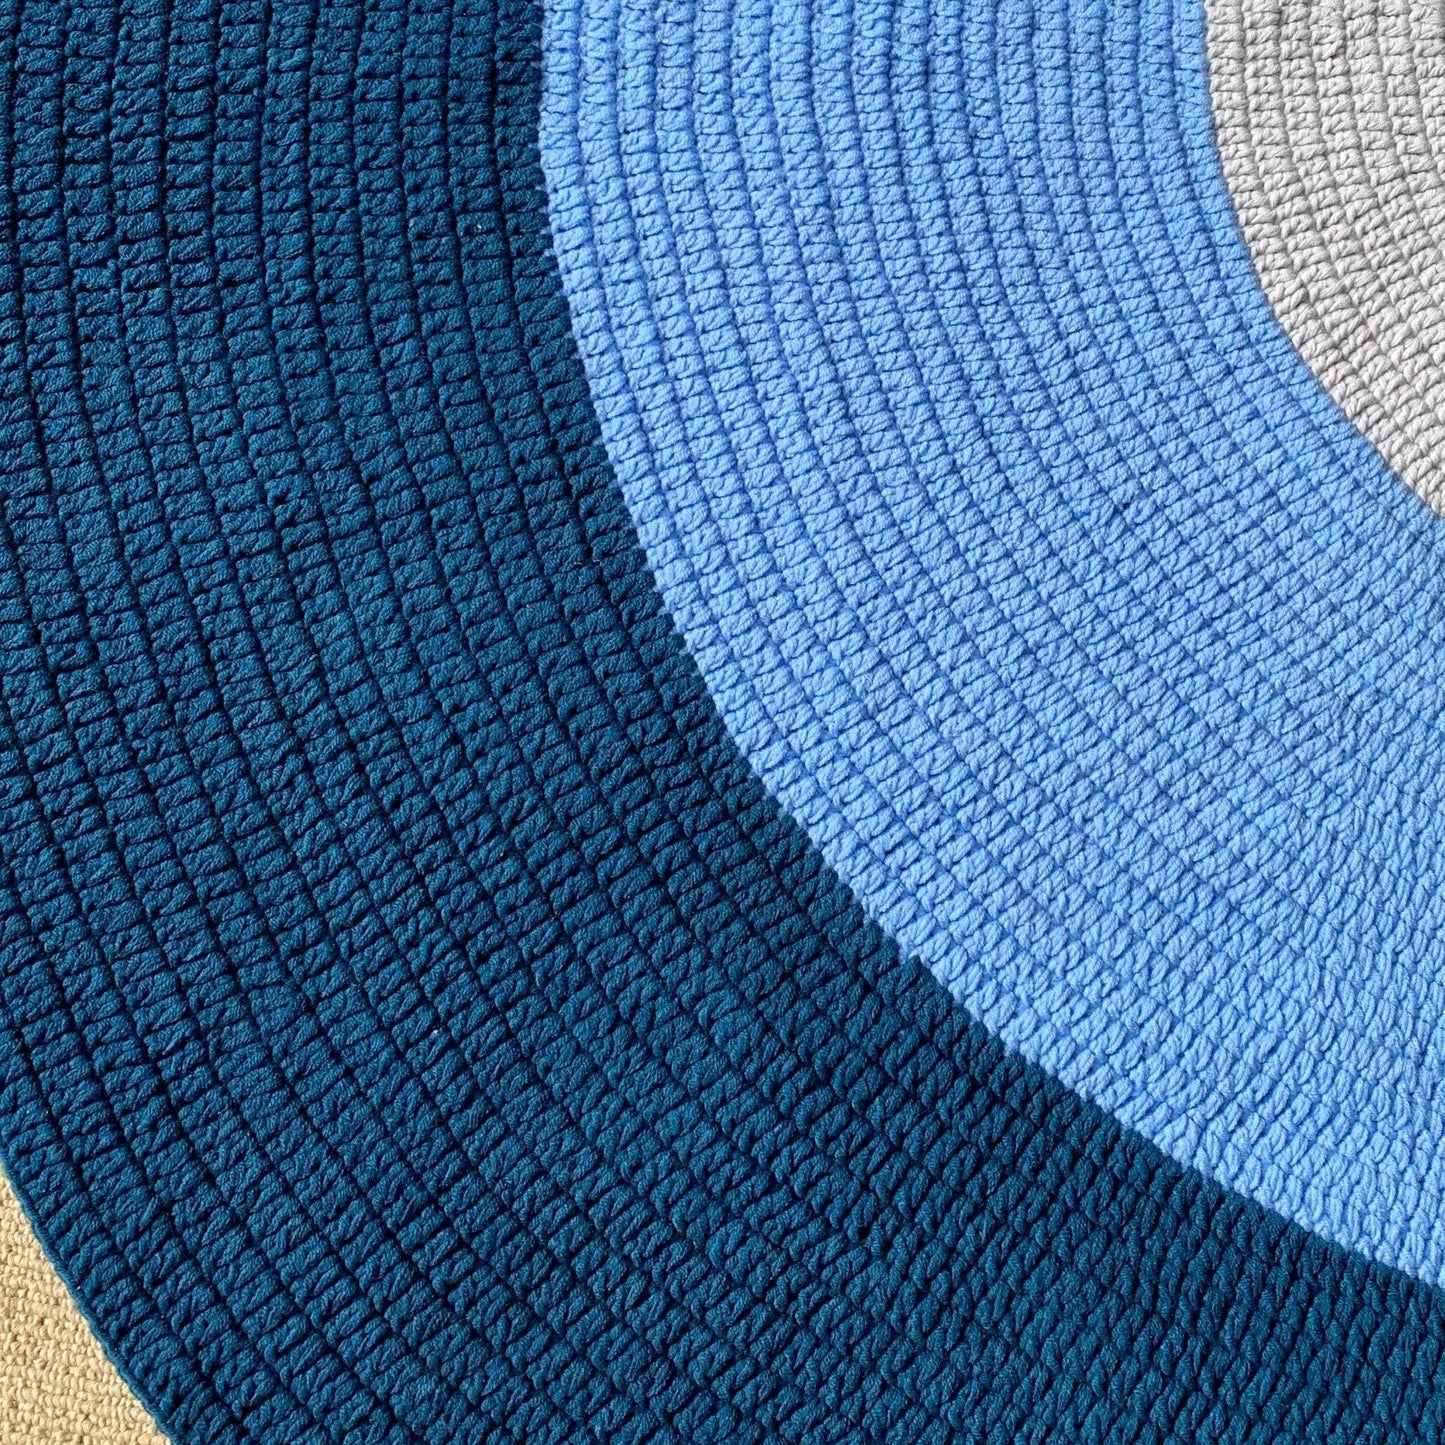 Crochet Rug - Navy Blue, Light Blue + Grey